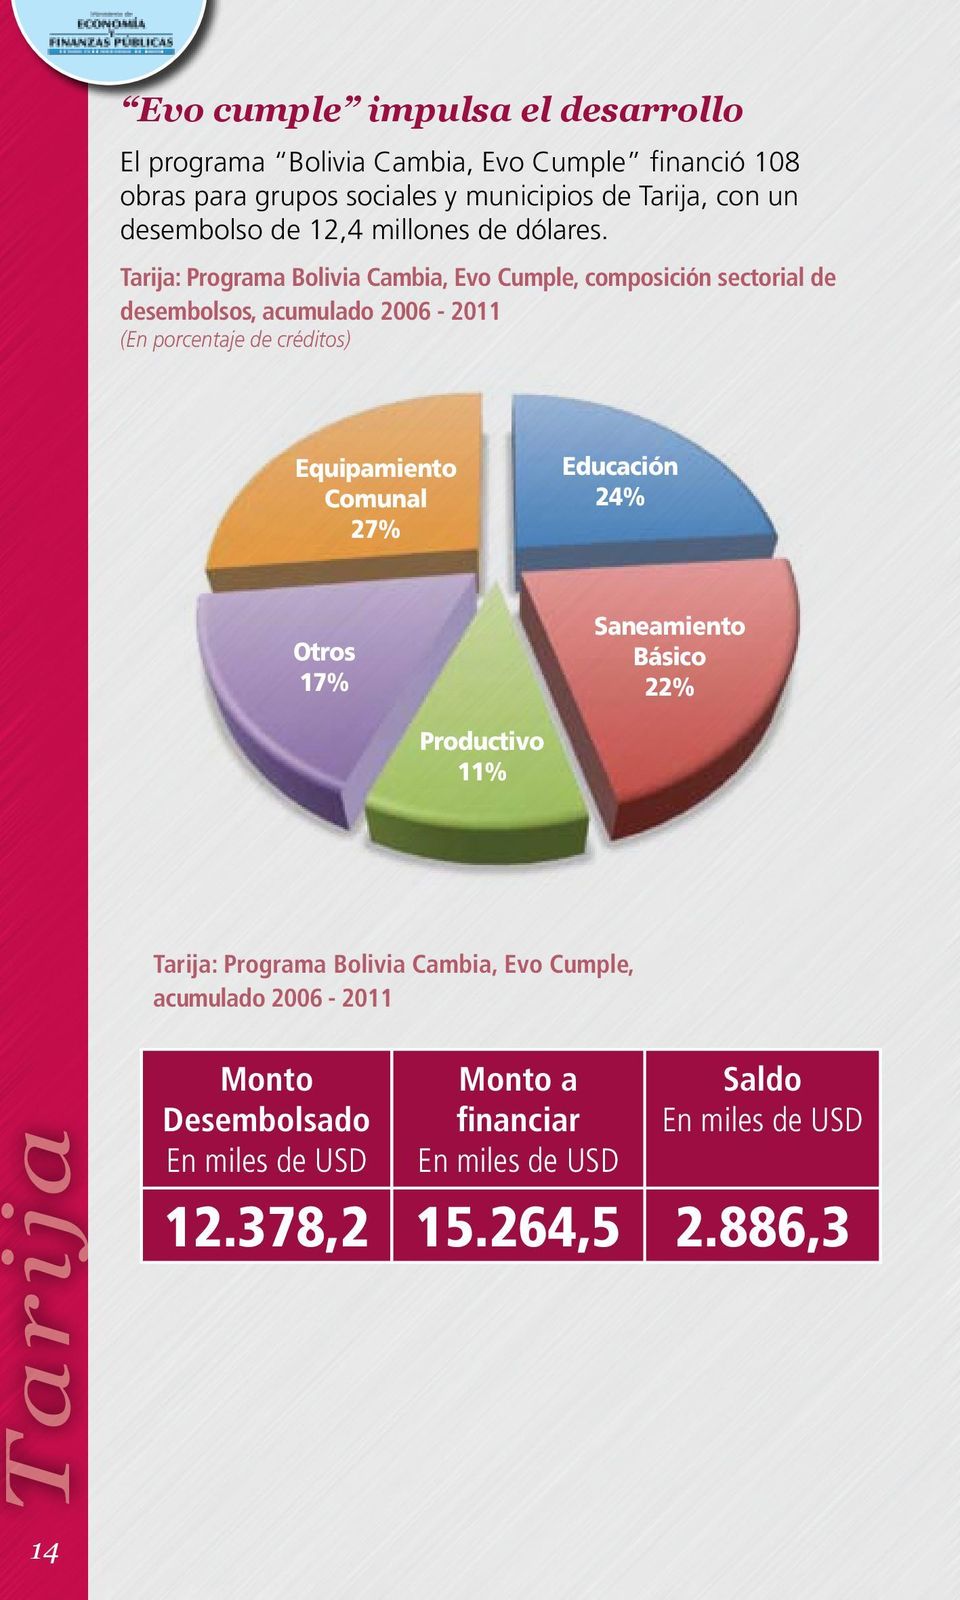 Tarija: Programa Bolivia Cambia, Evo Cumple, composición sectorial de desembolsos, acumulado 2006-2011 (En porcentaje de créditos) Equipamiento